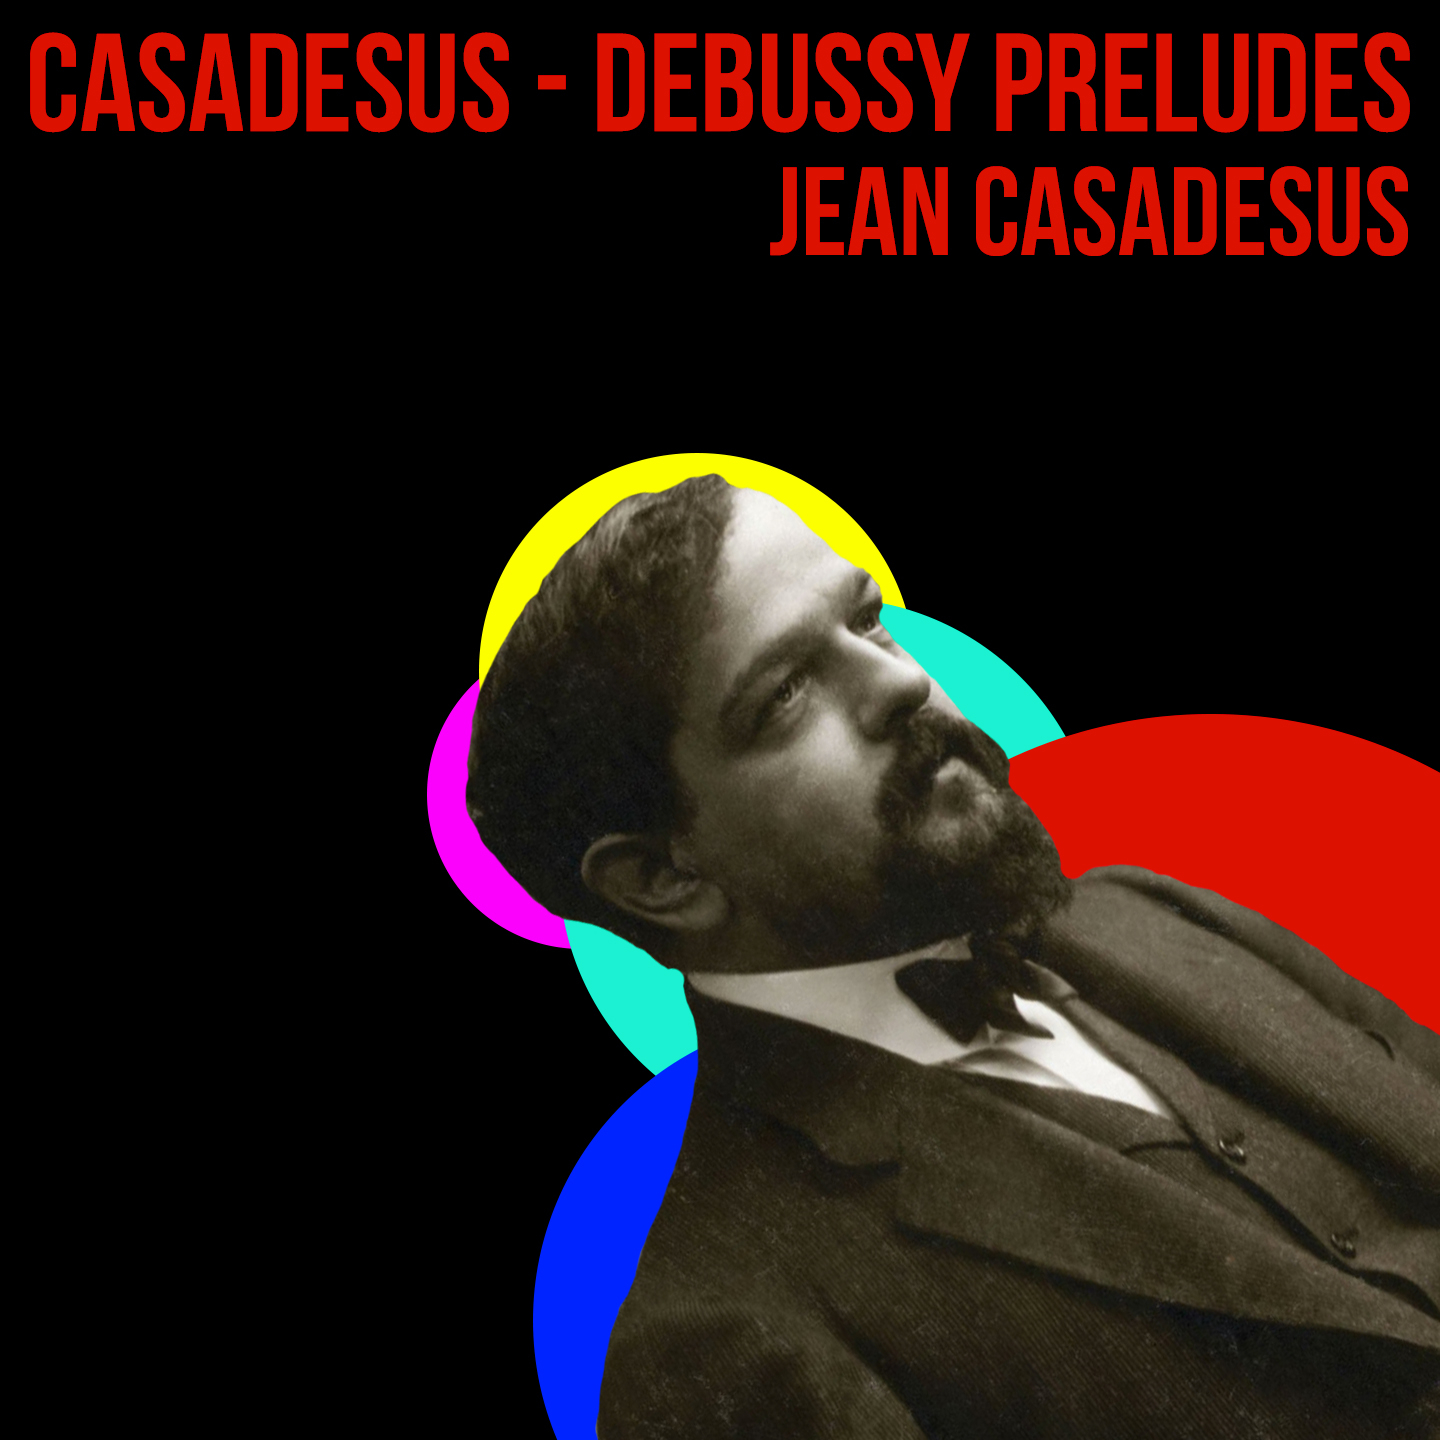 Casadesus - Debussy Preludes